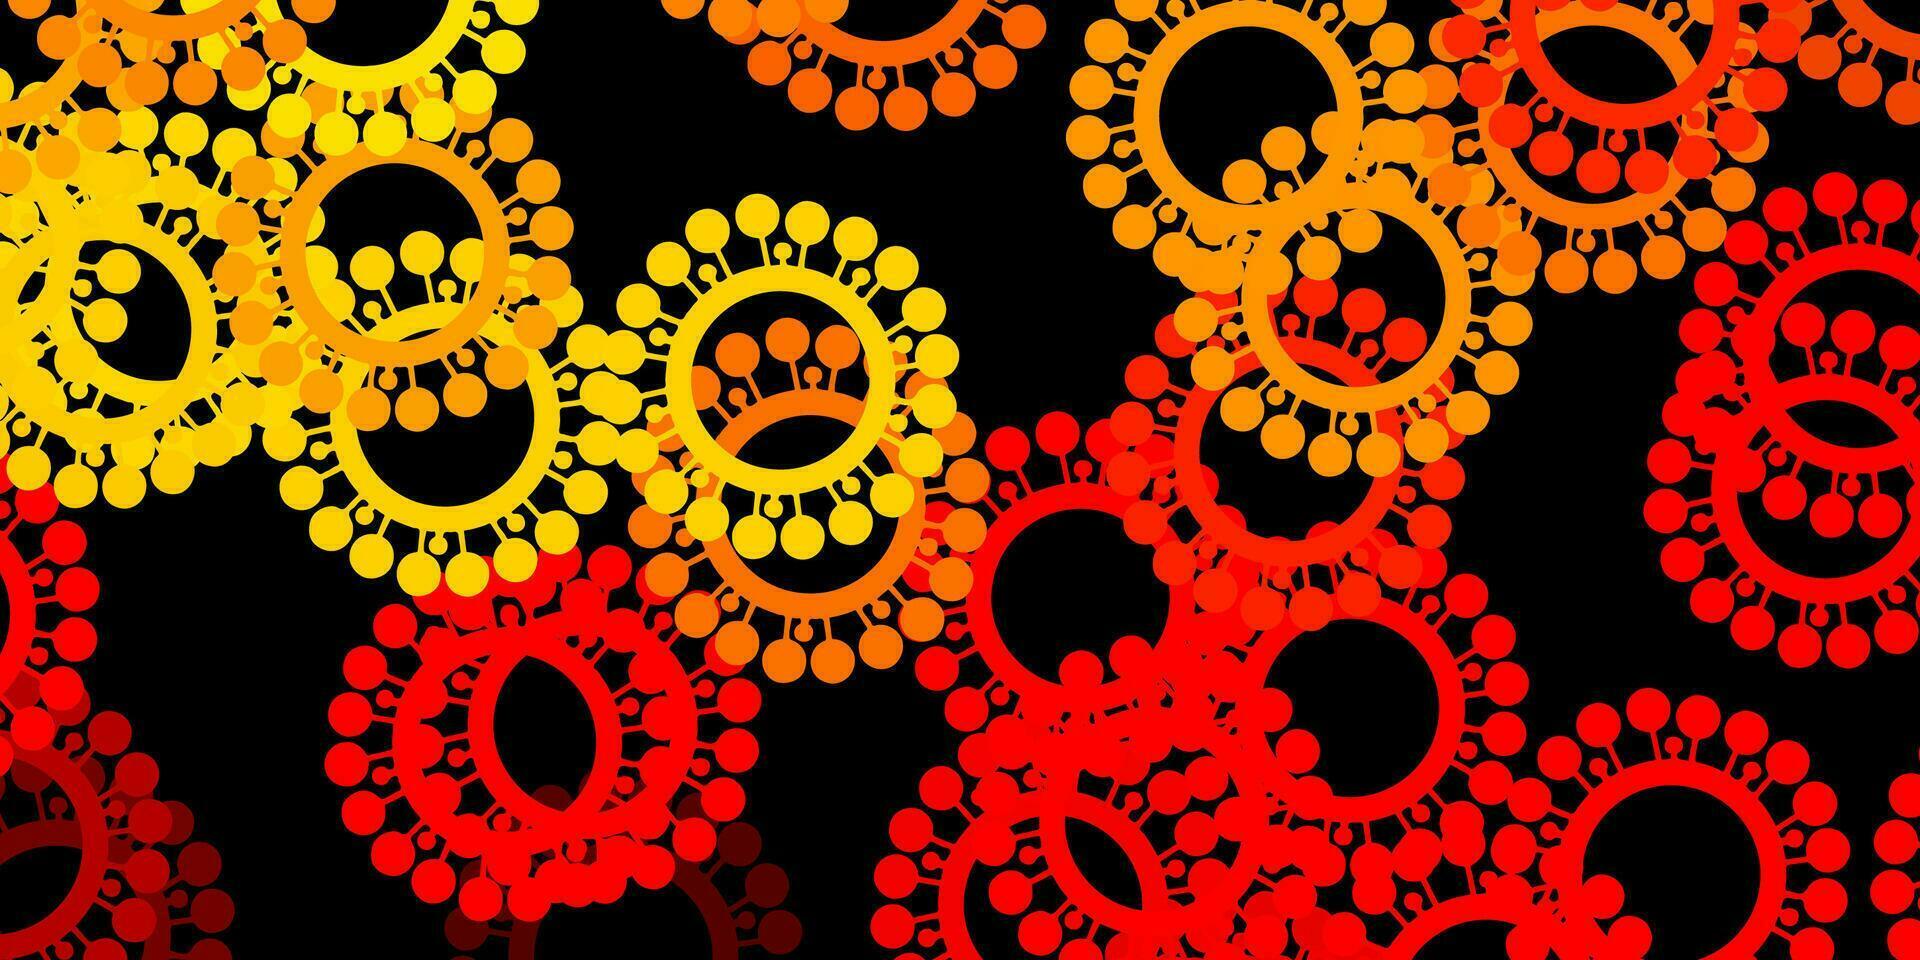 modèle vectoriel rouge et jaune foncé avec des éléments de coronavirus.